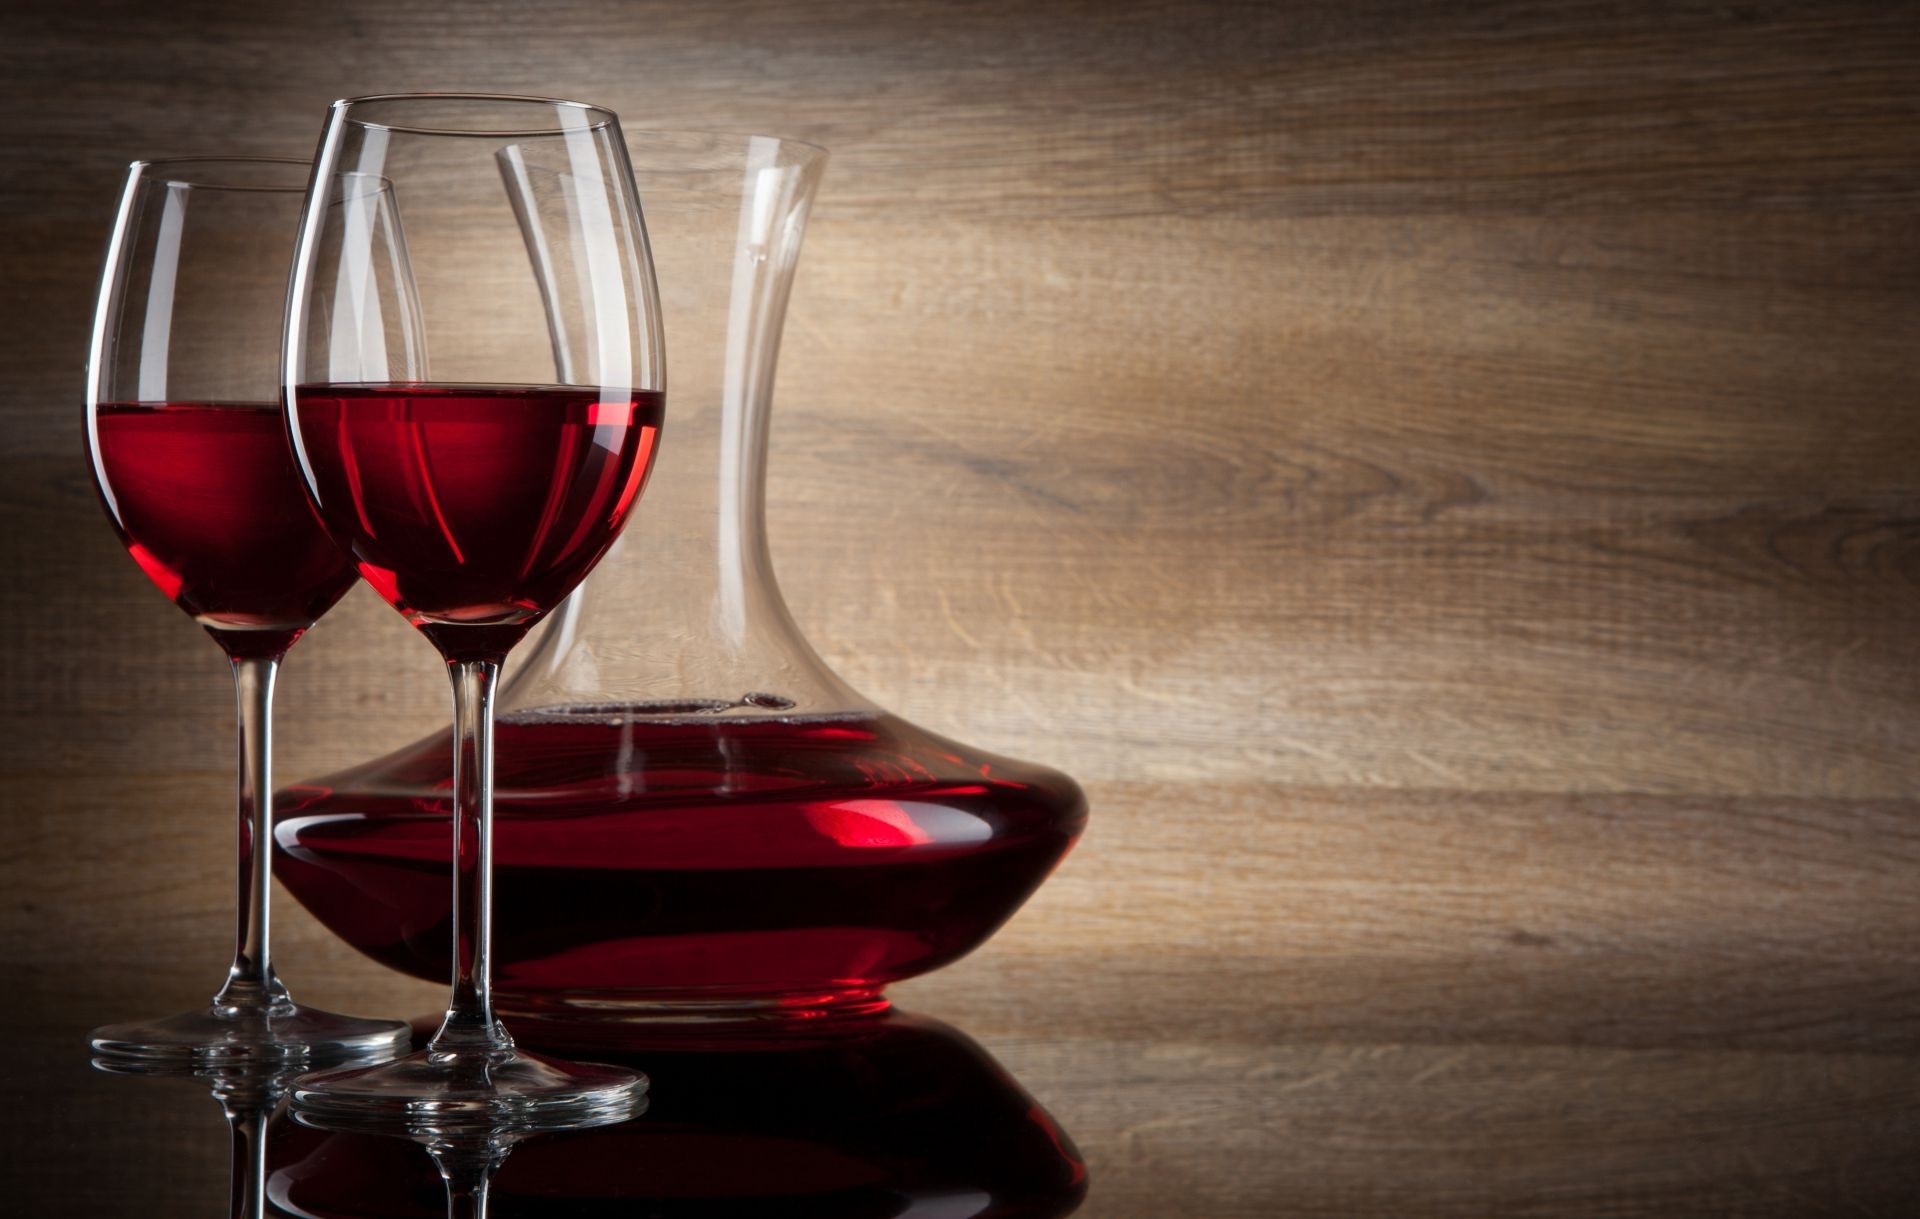 напитки вина красное вино винзавод алкоголь пить стекло ликер мерло темный бар бокал древесины